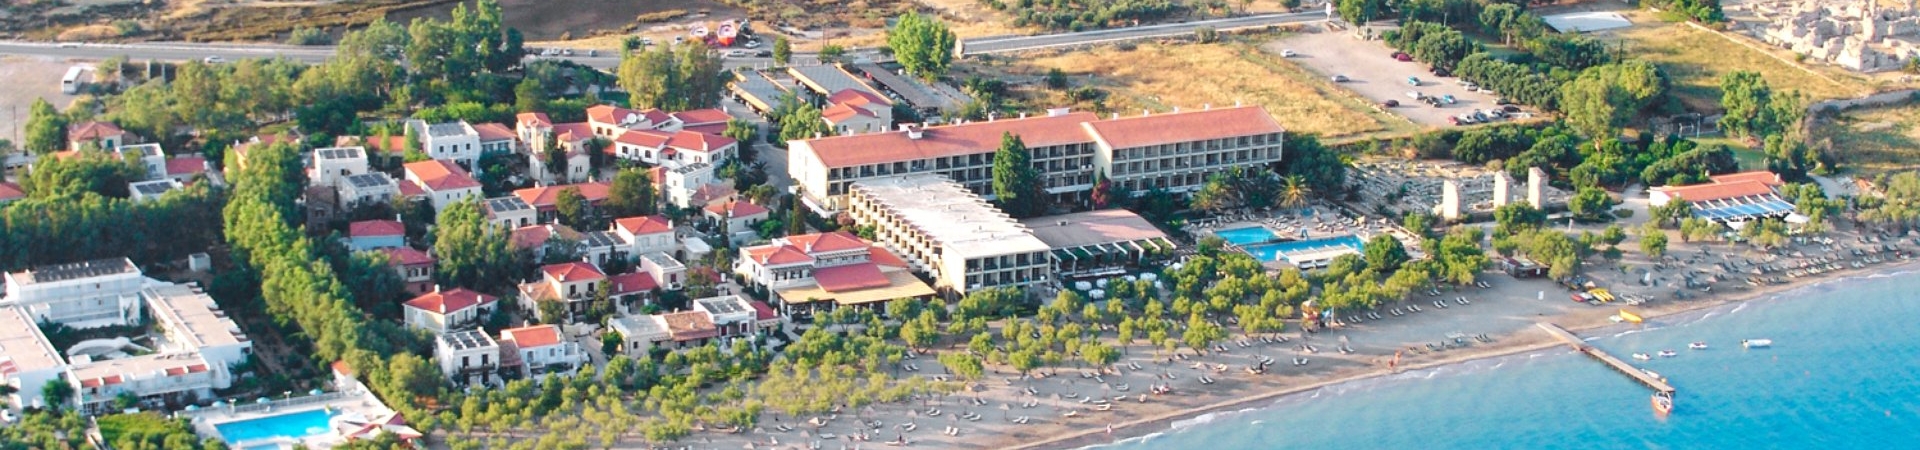 Vacanta in Samos - Doryssa Seaside Resort